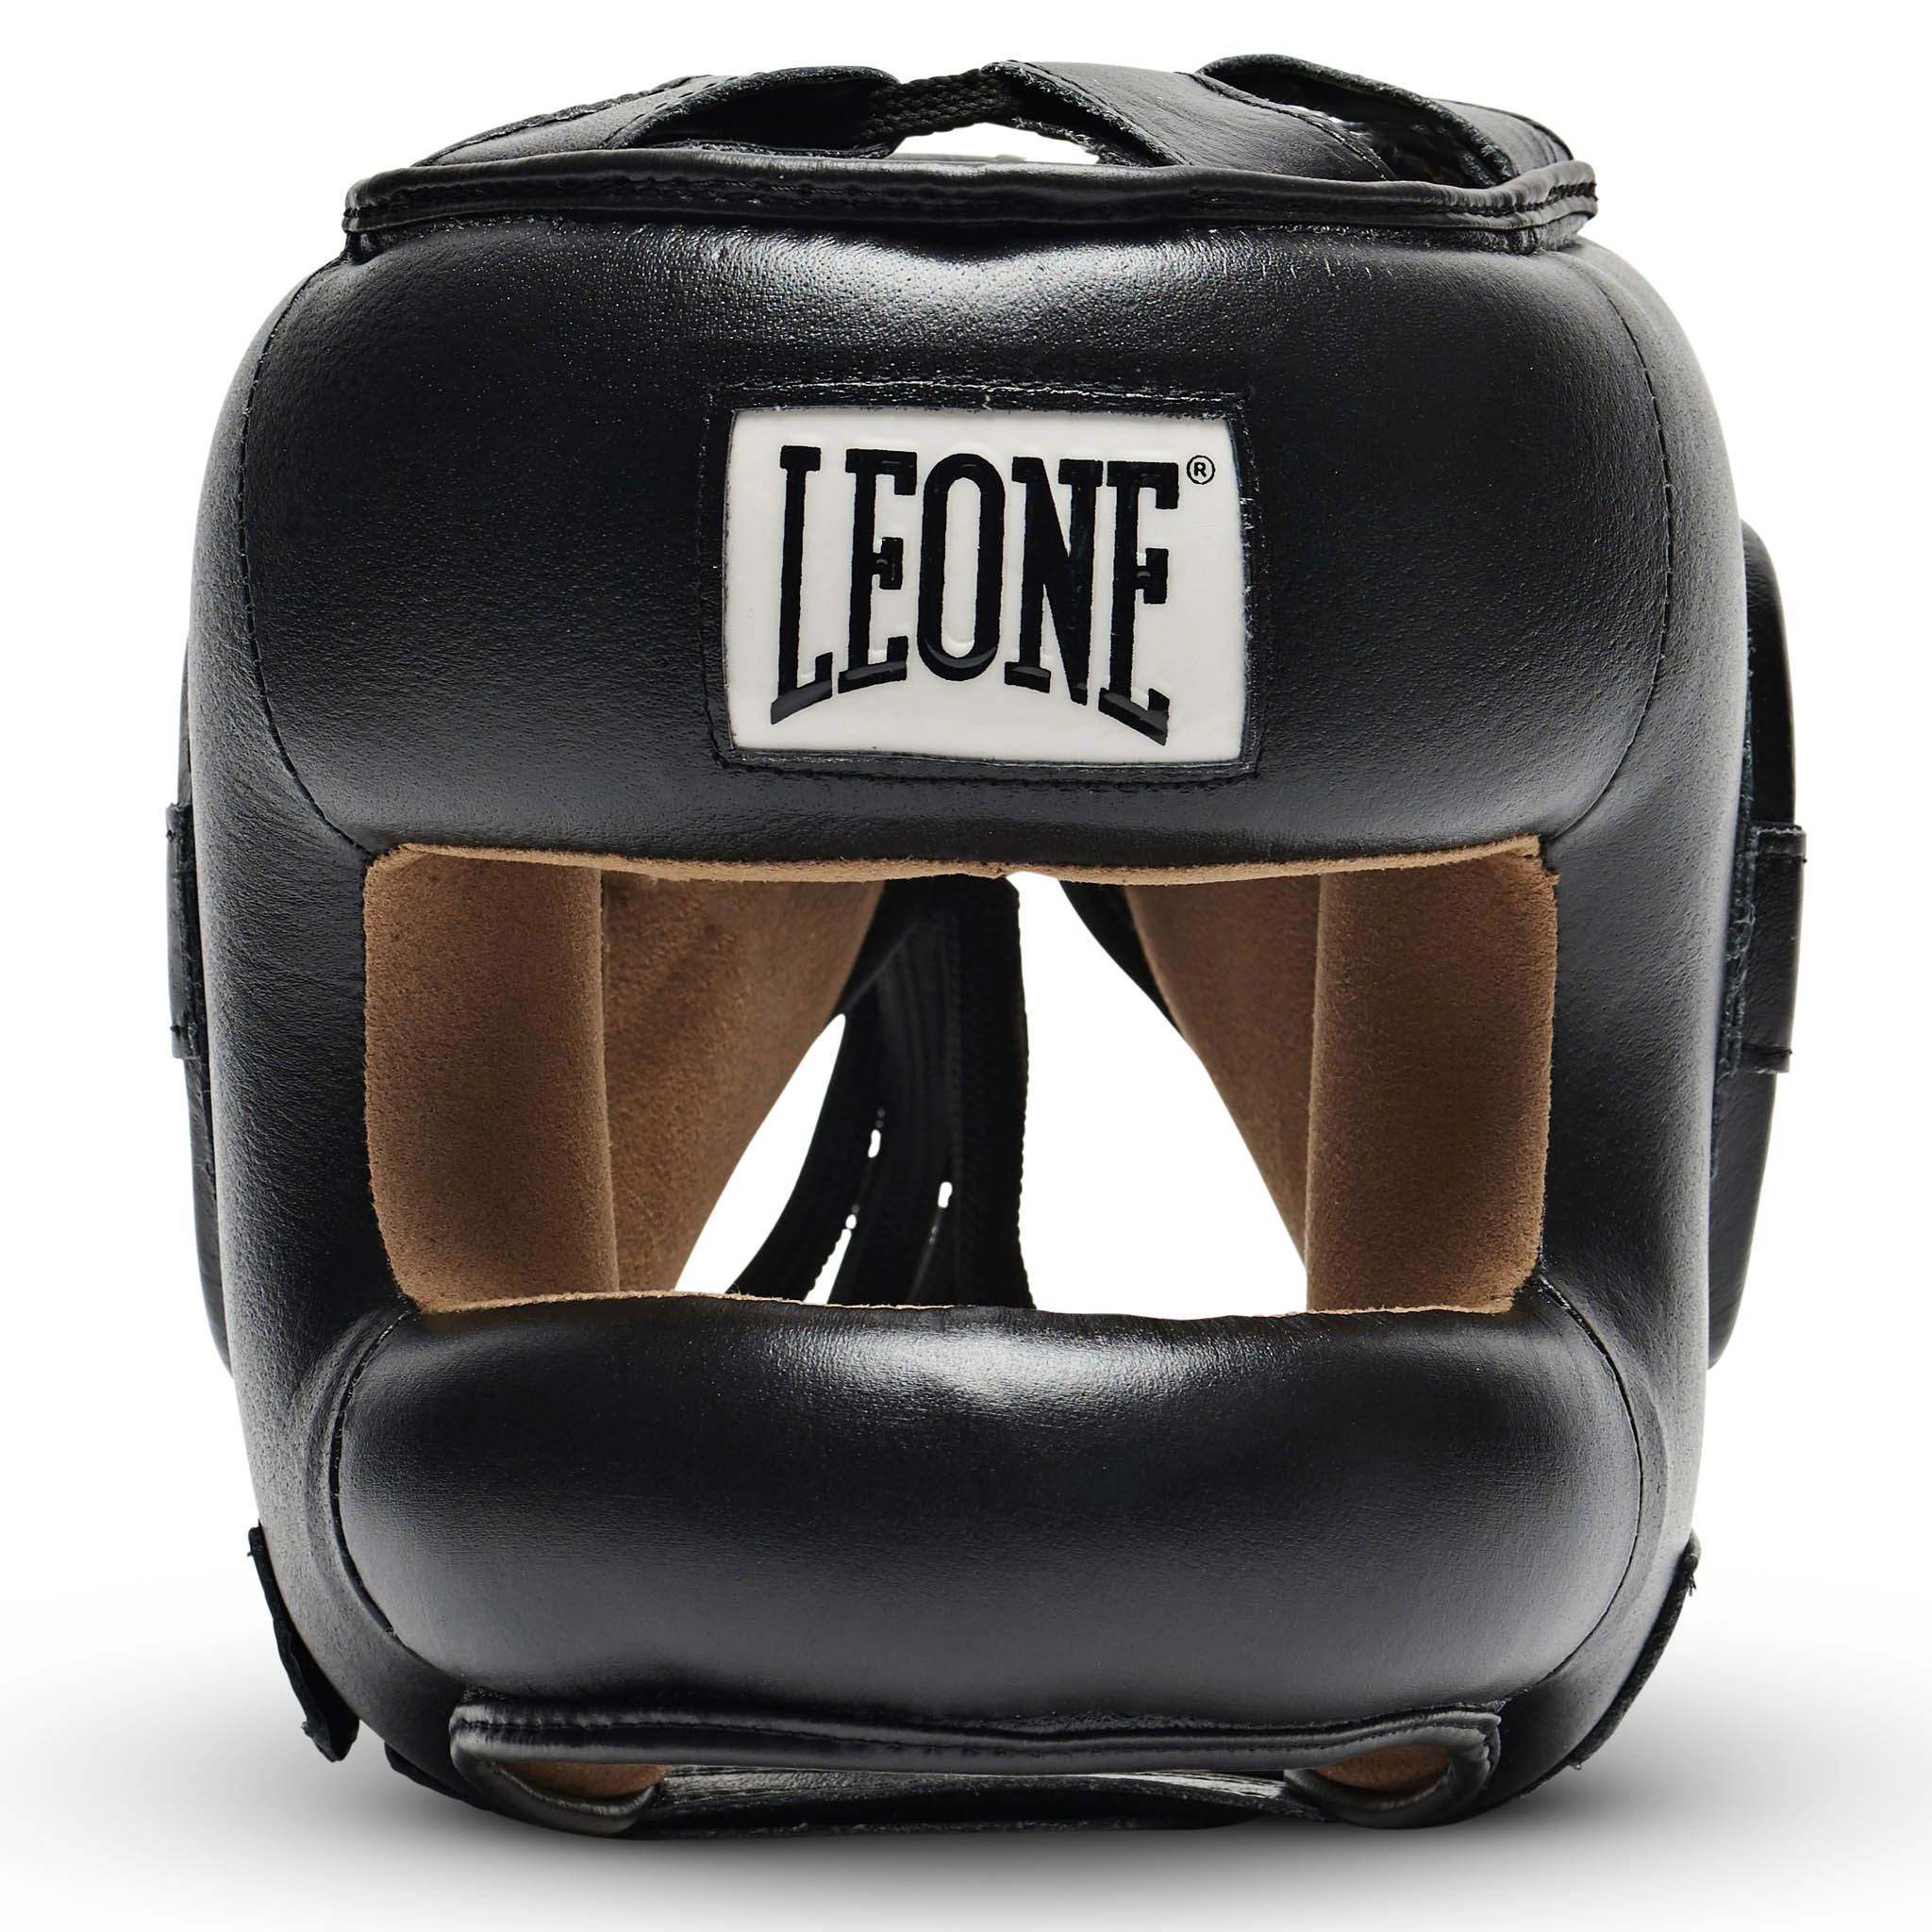 Casco de Boxeo Leone 1947 con barra frontal Protection CS425 